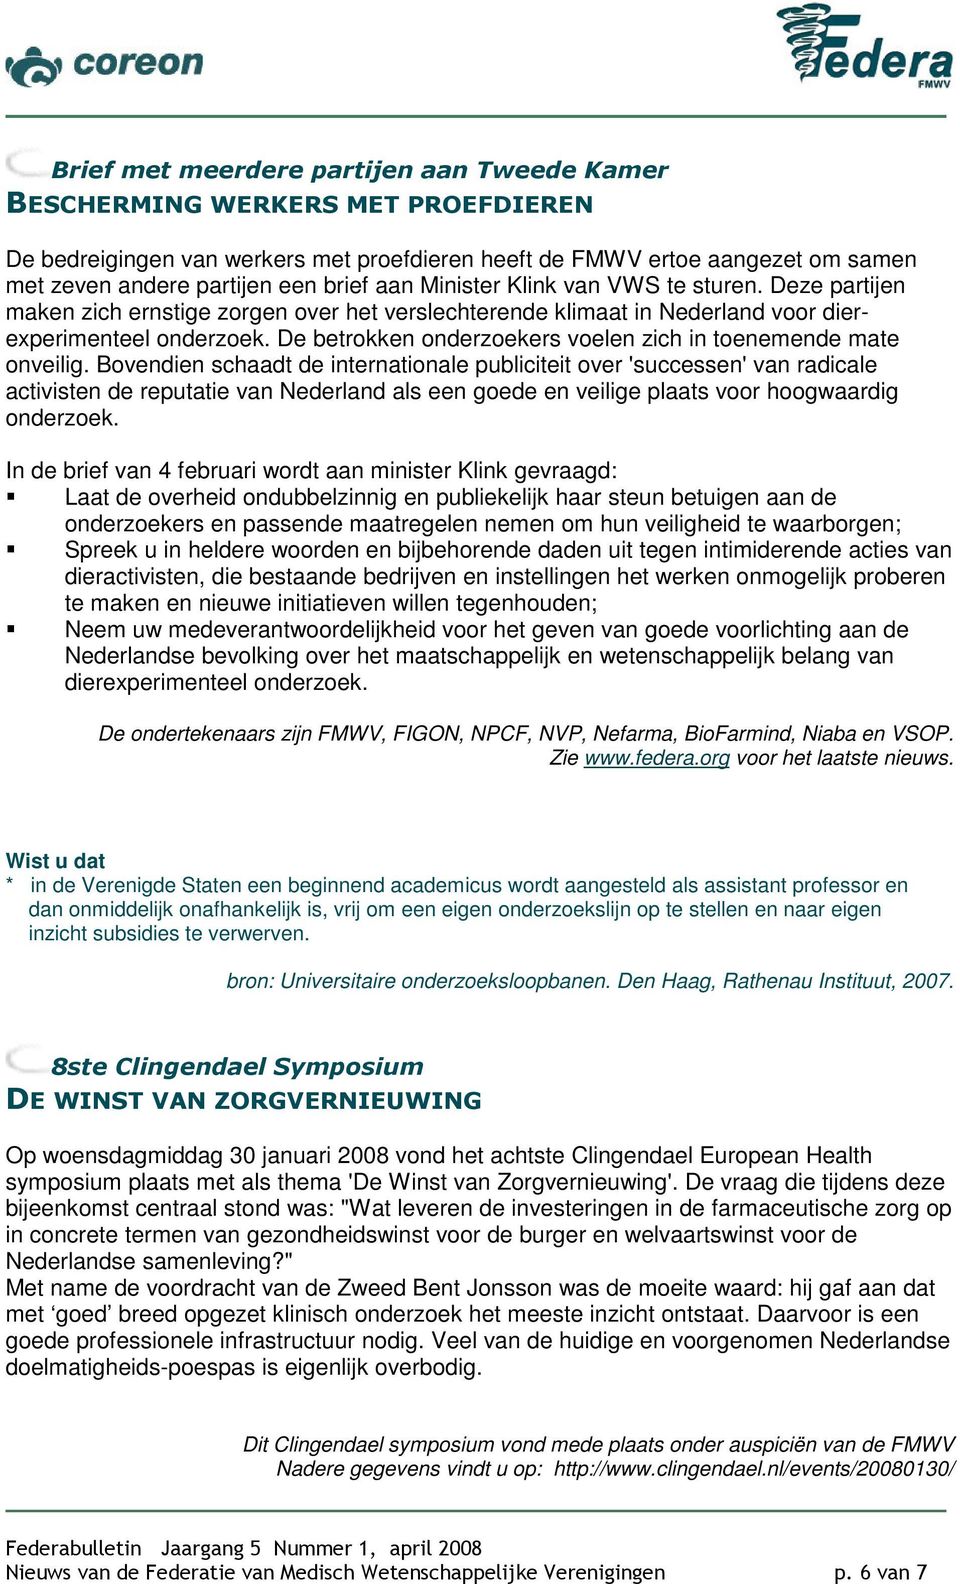 een brief aan Minister Klink van VWS te sturen. Deze partijen maken zich ernstige zorgen over het verslechterende klimaat in Nederland voor dierexperimenteel onderzoek.